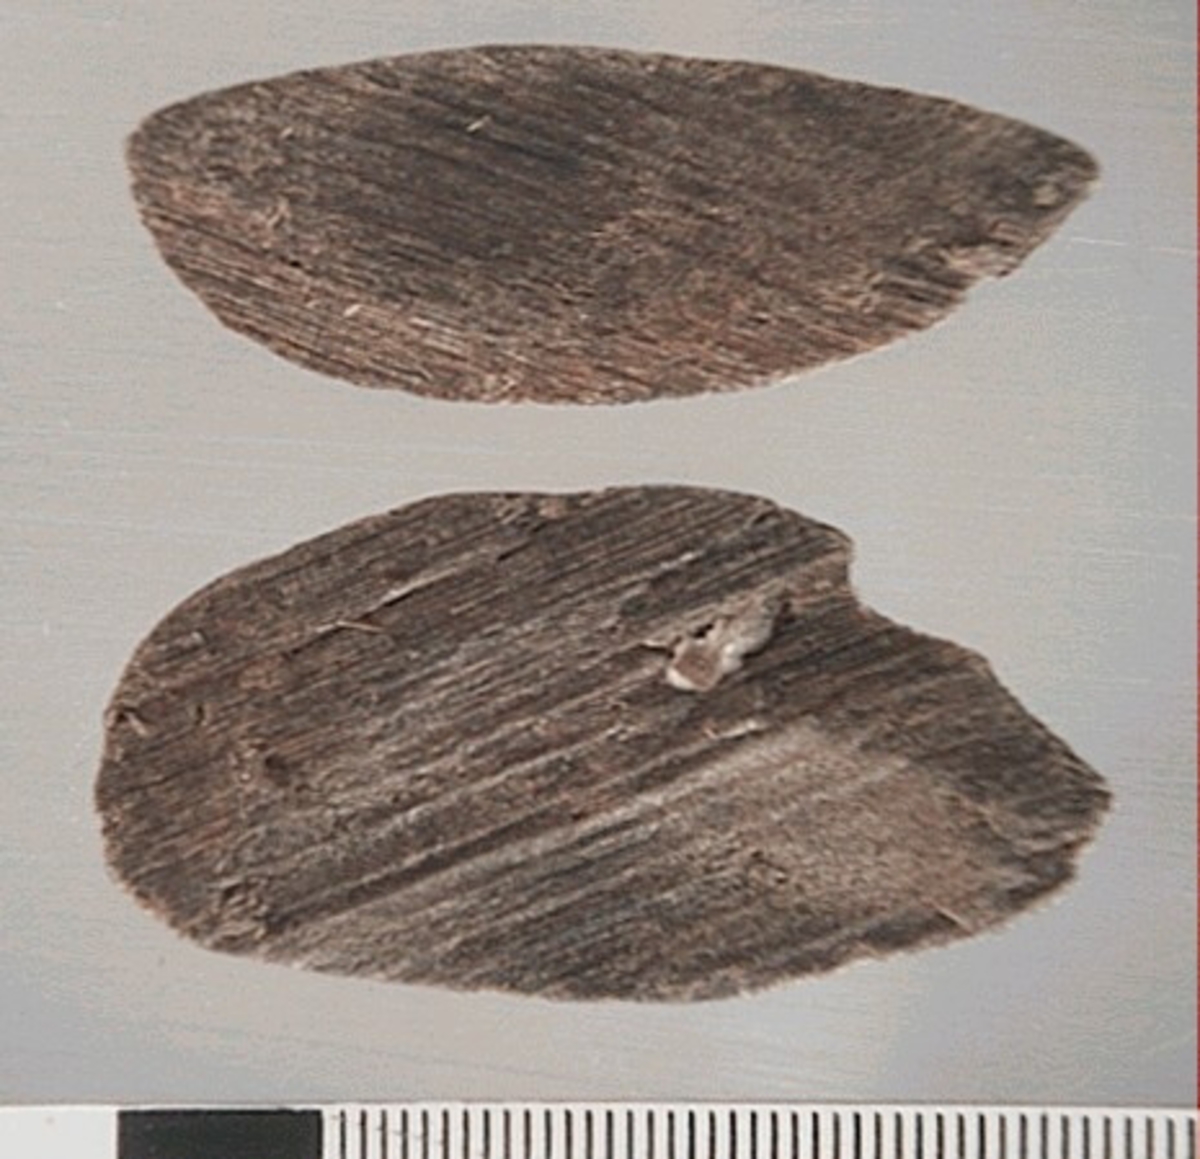 Två delar av en träsked. Delarna utgör mindre partier av skedbladet. På delarna syns en svagt rödbrun färg, vilket möjligen är spår efter bemålning.
Delarna är mycket slitna.